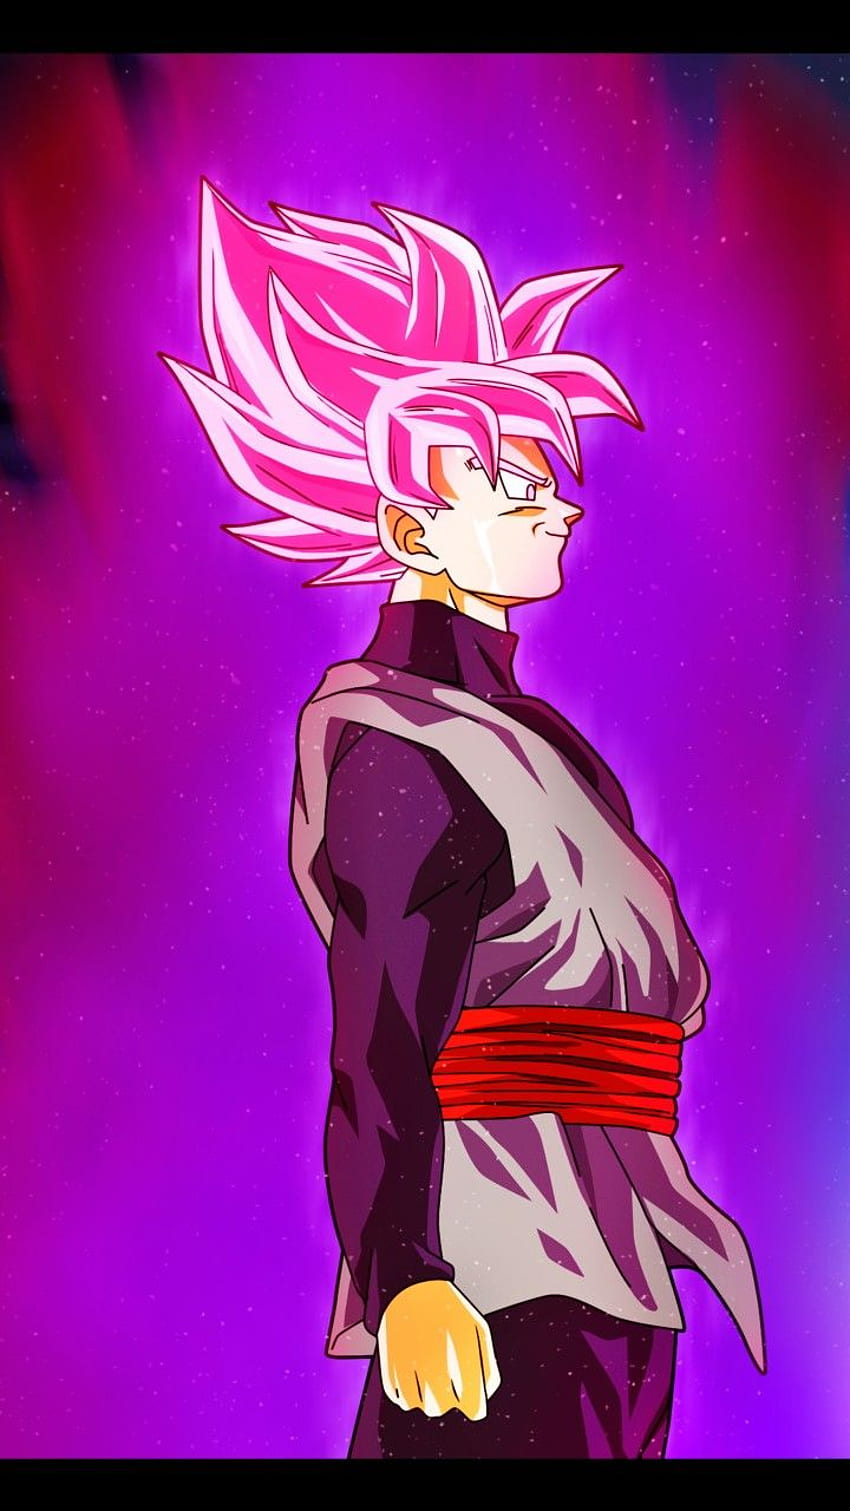 Sự phóng khoáng, tinh thần chiến đấu và thực dụng của Black Goku thể hiện rõ trong hình nền của bạn. Khám phá sức mạnh, năng lượng và tính cách độc đáo của nhân vật Anime đình đám này.